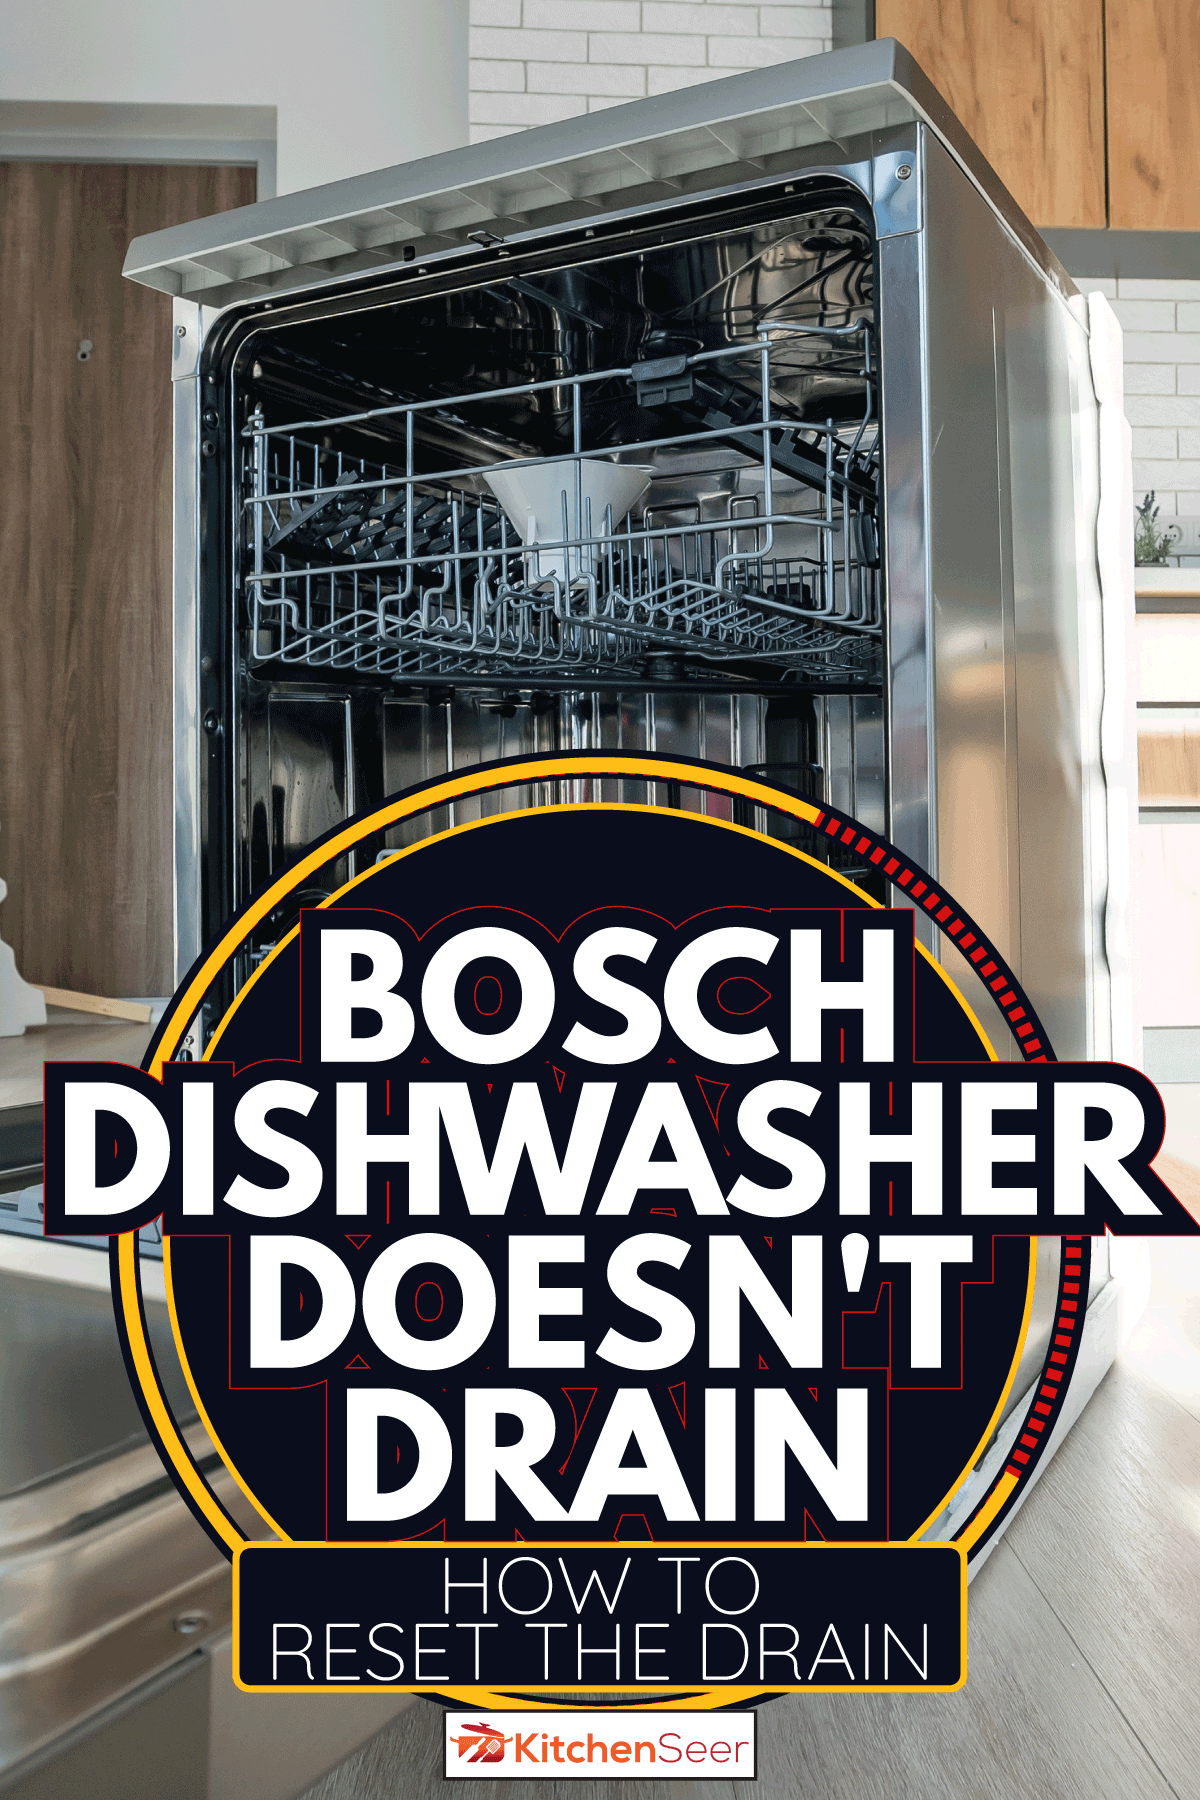 开放式集成洗碗机在现代厨房。bd手机下载博世洗碗机不排水-如何重置排水管